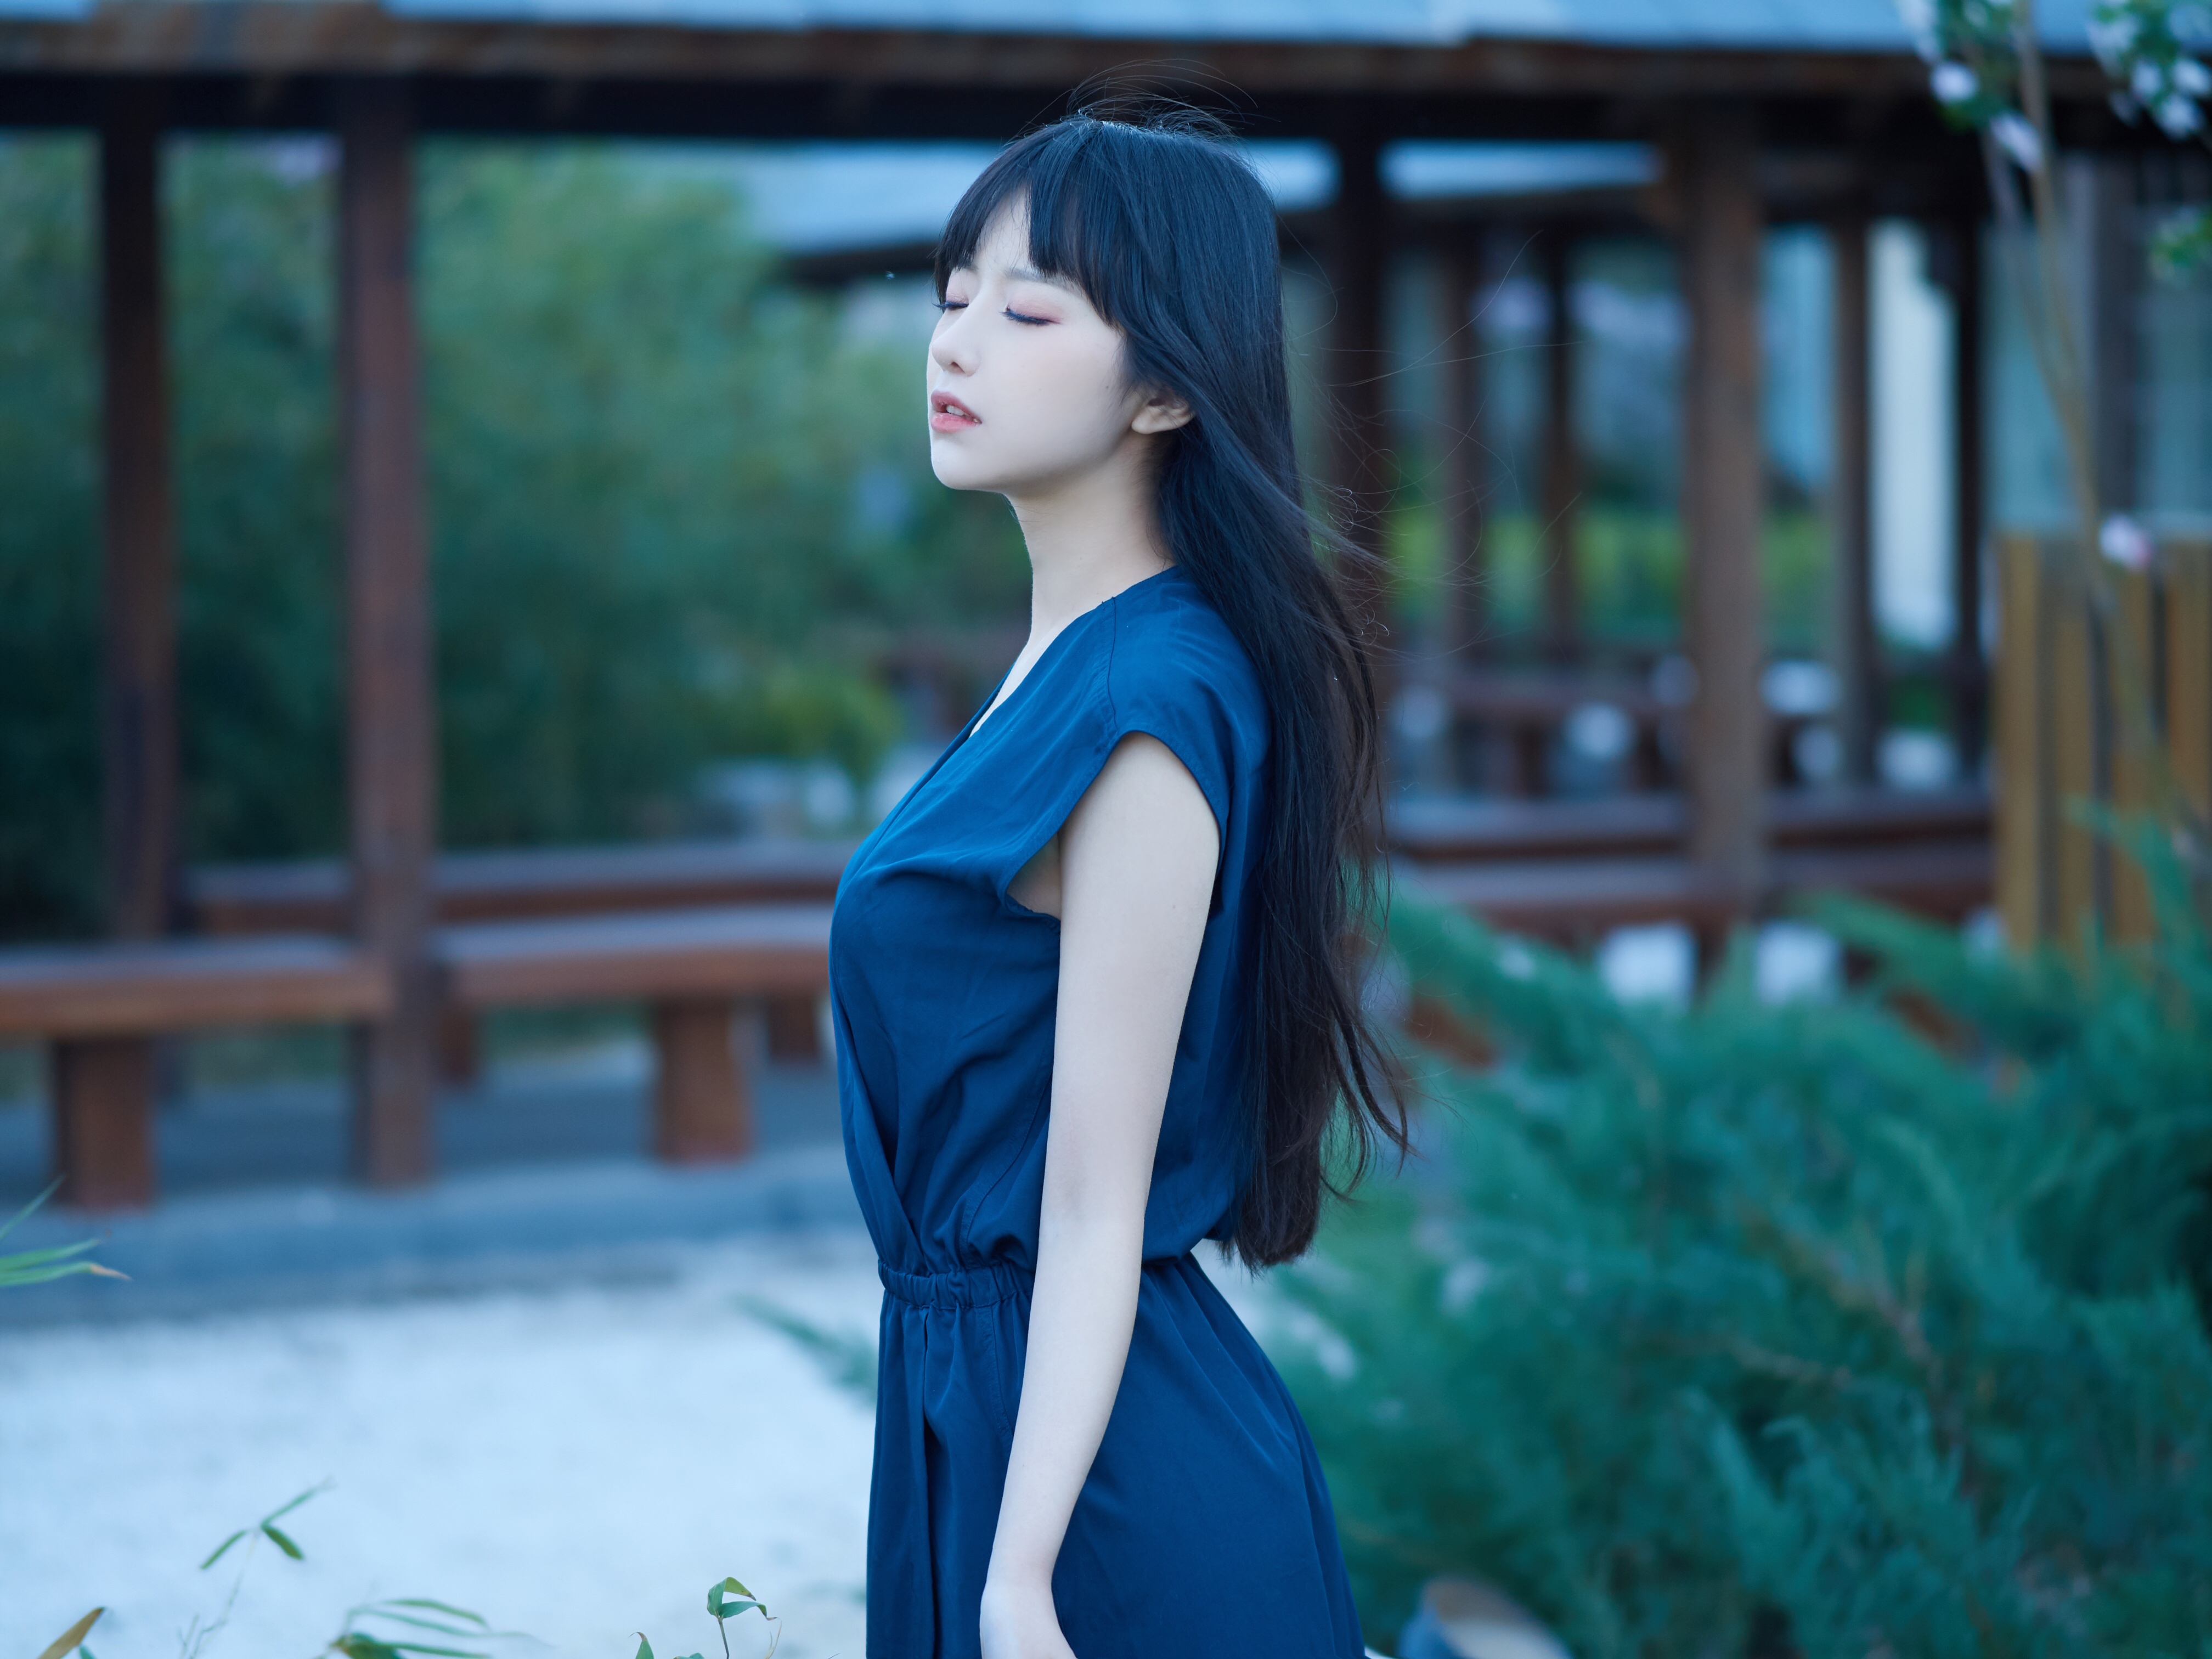 Asian Dress Outdoors Long Hair Black Hair Blue Dress Women Shika XiaoLu 4032x3024